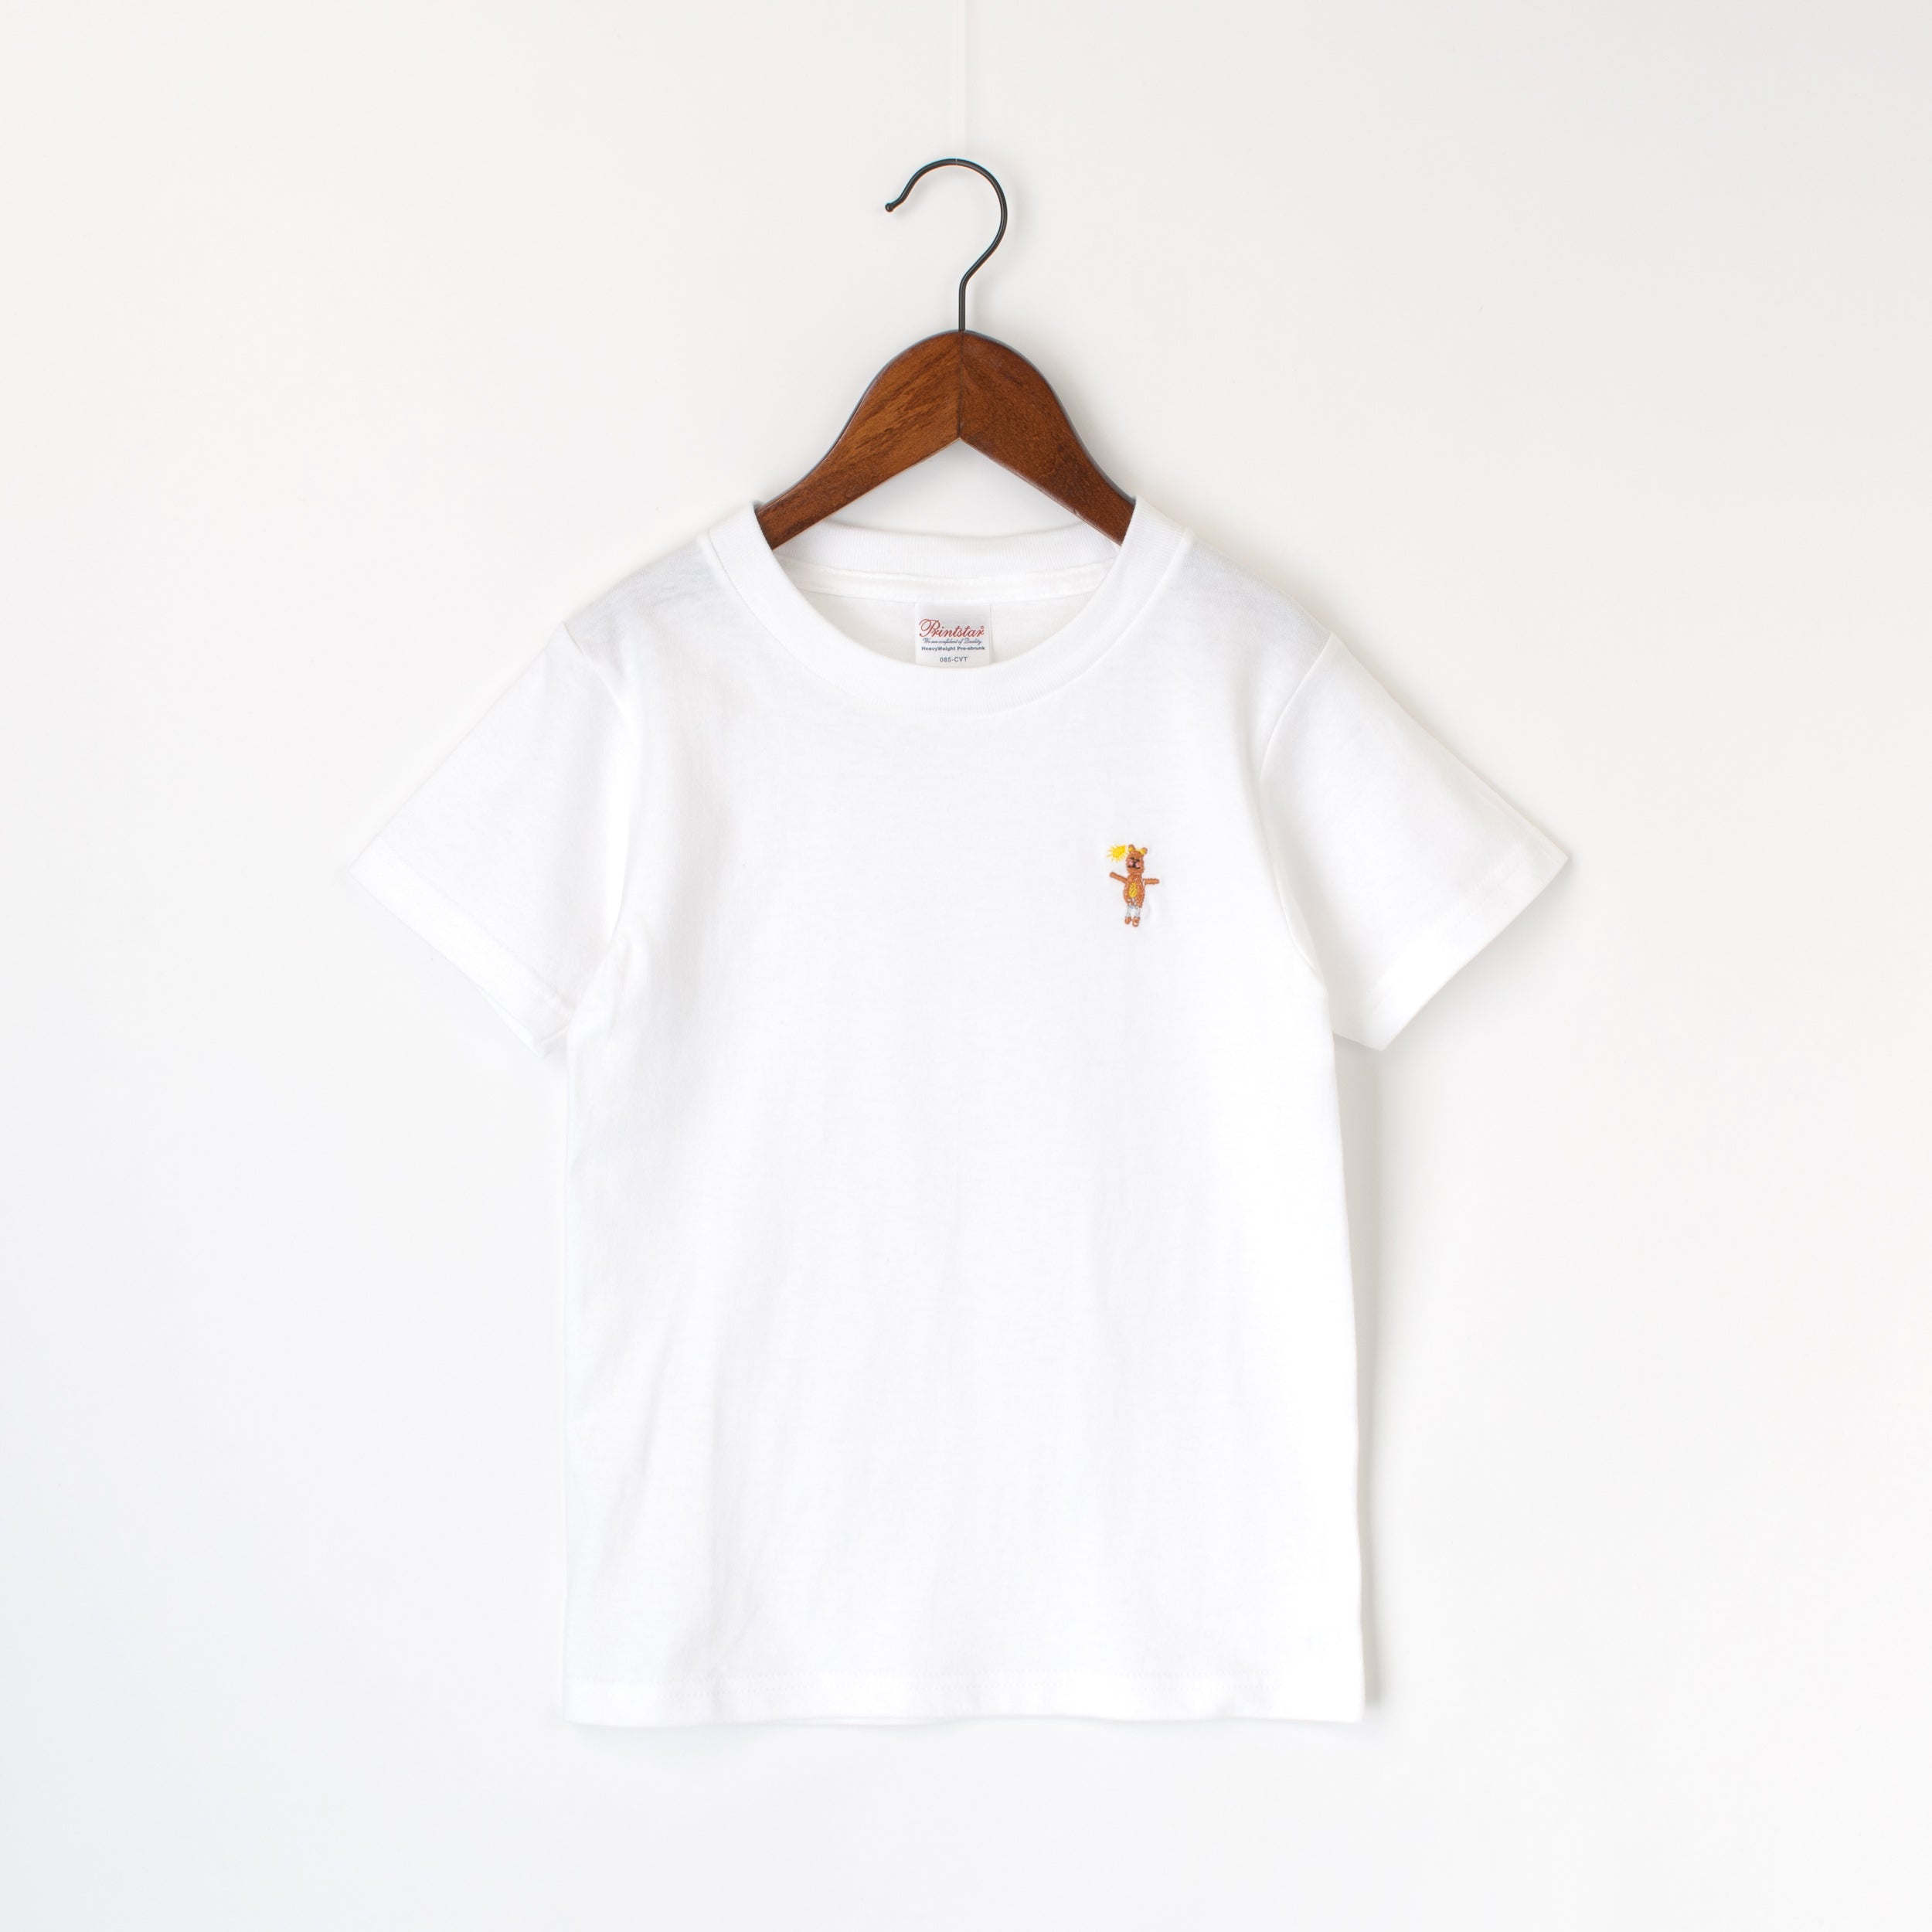 刺繡Tシャツ – クレヨンパラダイス